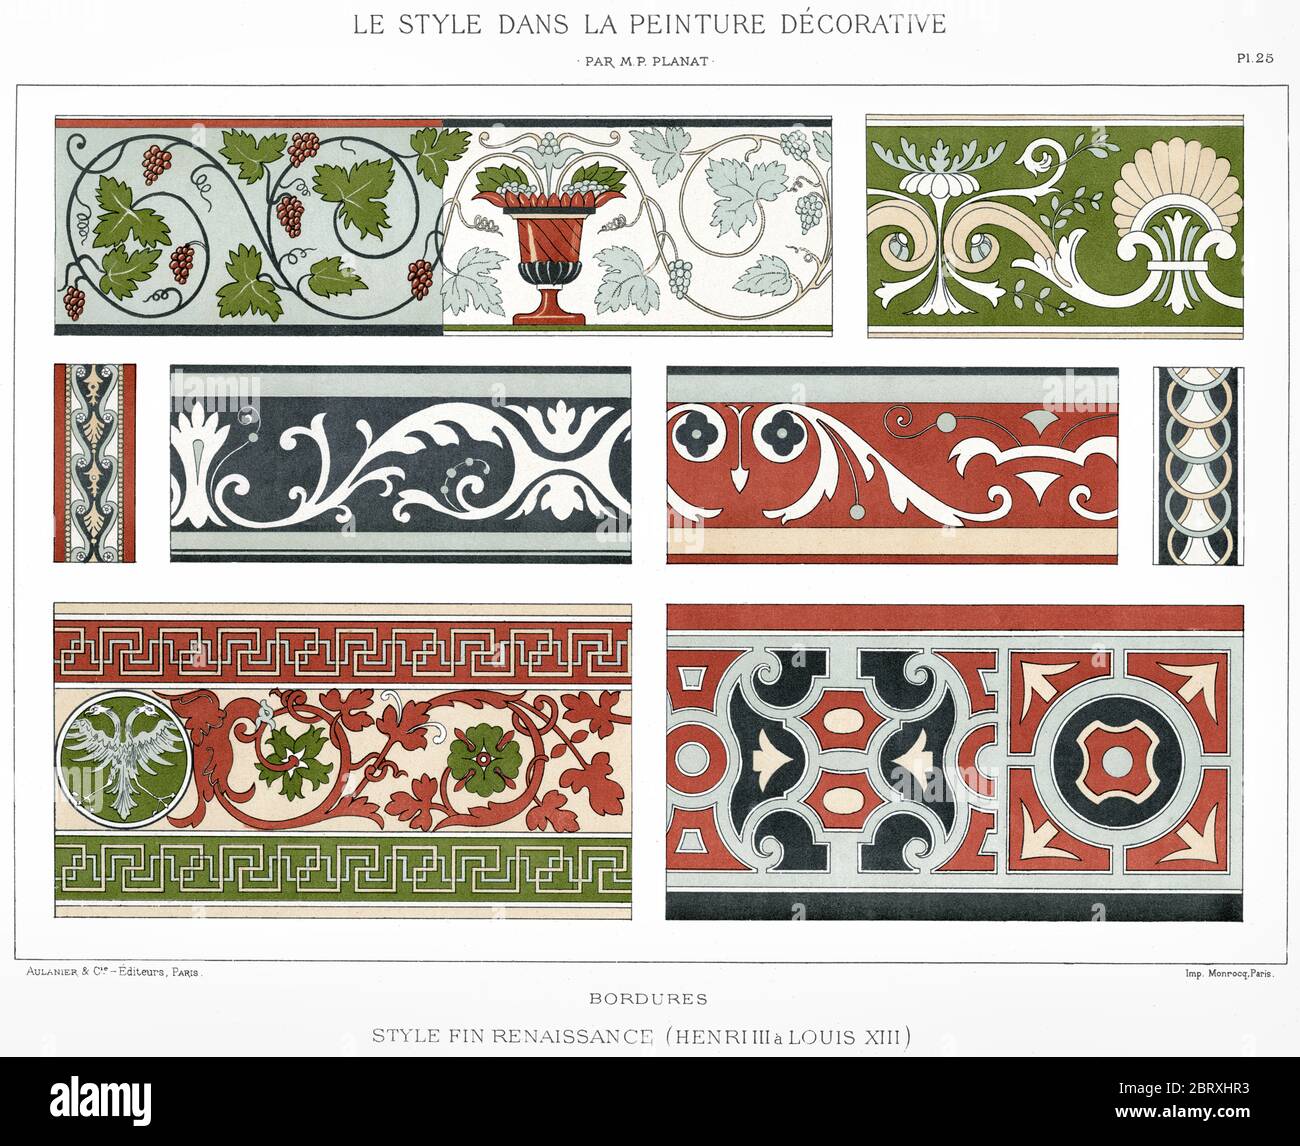 Style de la fin de la Renaissance : bordures, du style en peinture décorative 1892. Banque D'Images